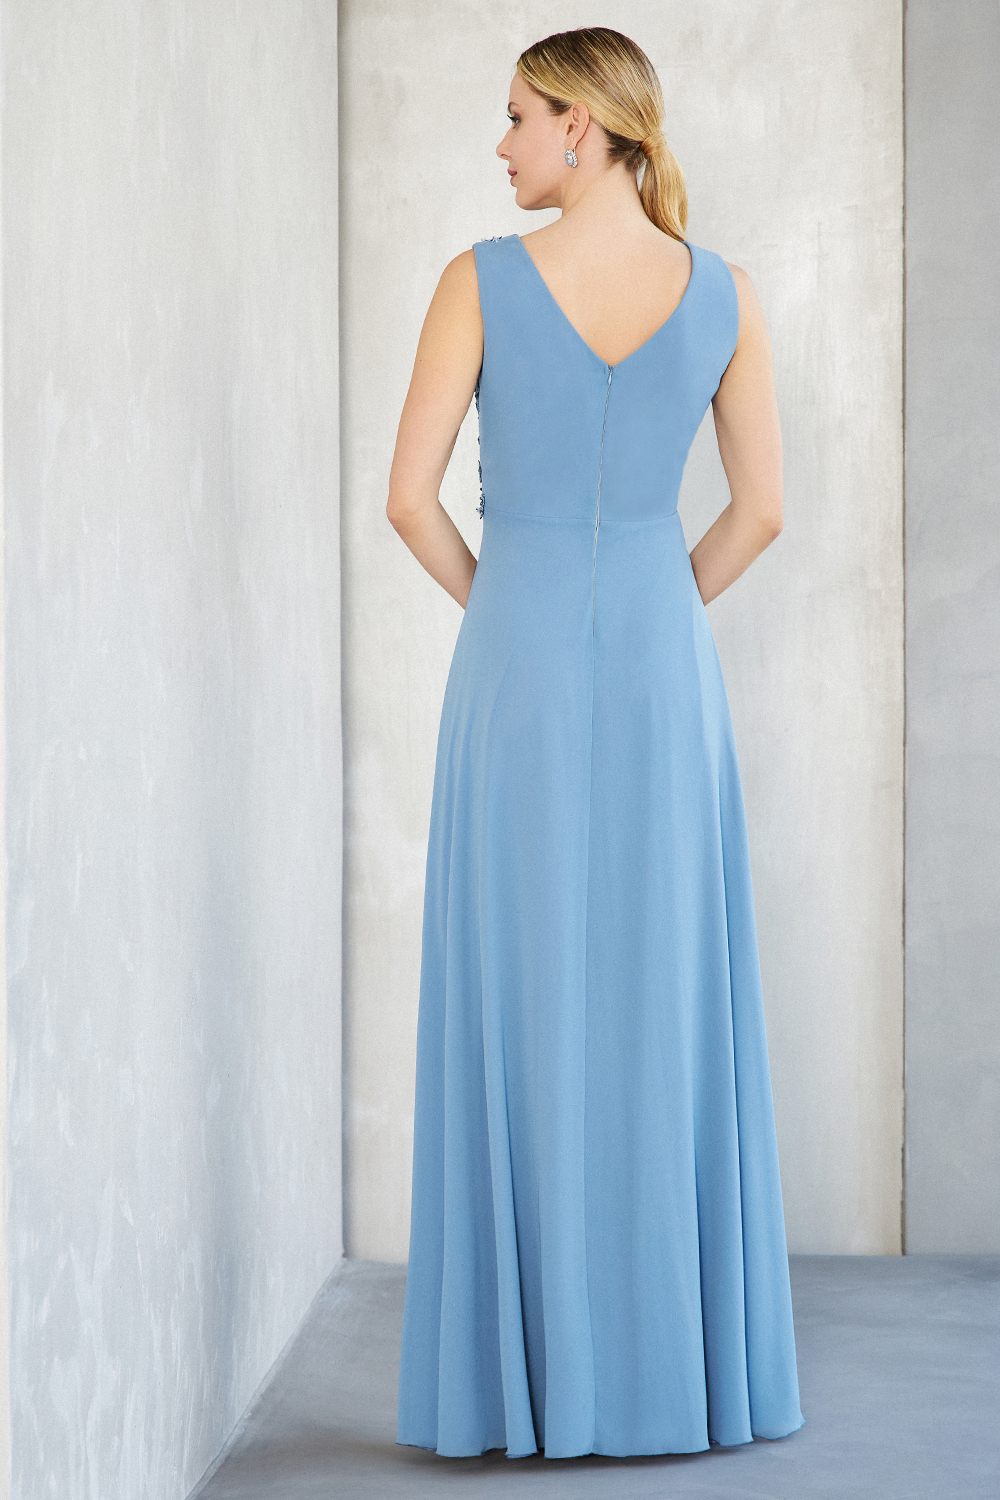 Κλασικό φόρεμα μακρύ από μουσελίνα με κέντημα, δαντέλα στο τοπ  και φαρδιές τιράντες